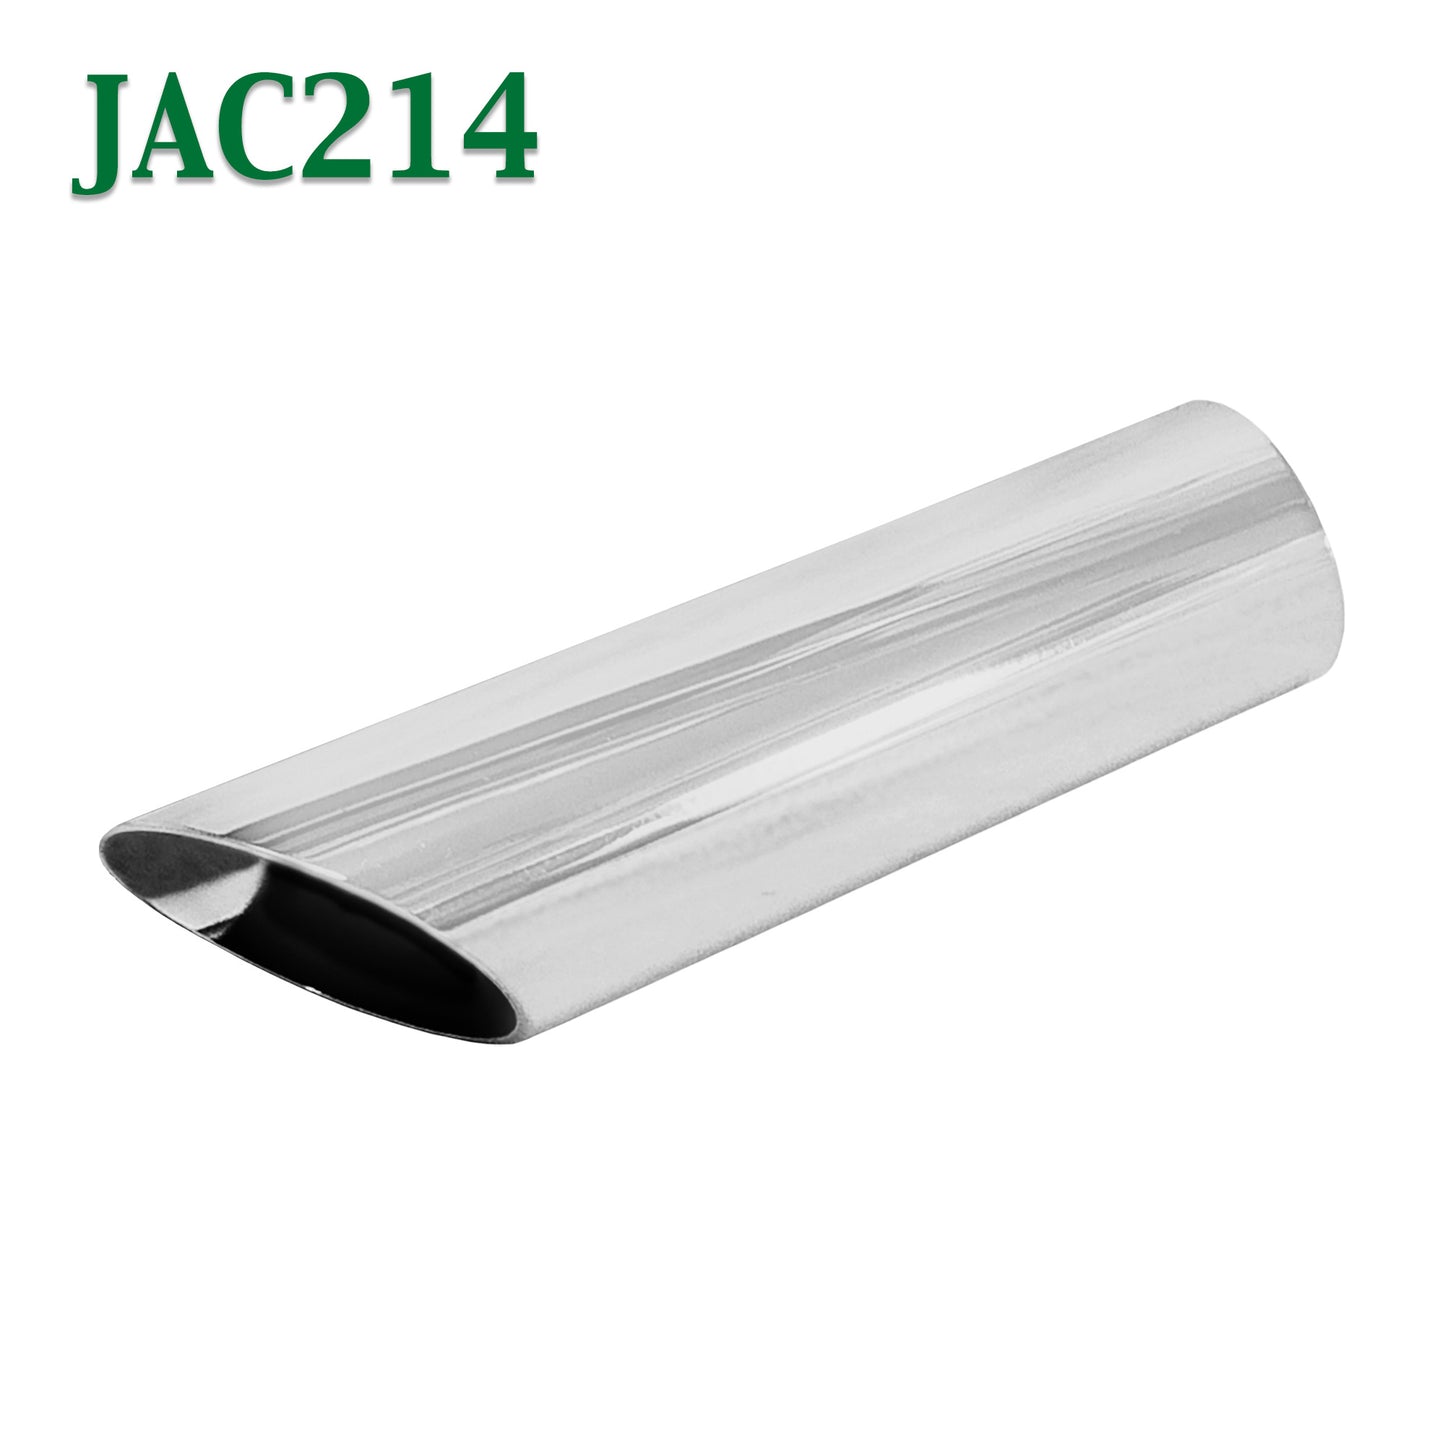 JAC214 2 1/4" 2.25" Chrome Angle Cut Cowboy Exhaust Tip 2 1/2" 2.5" Outlet / 9" Long